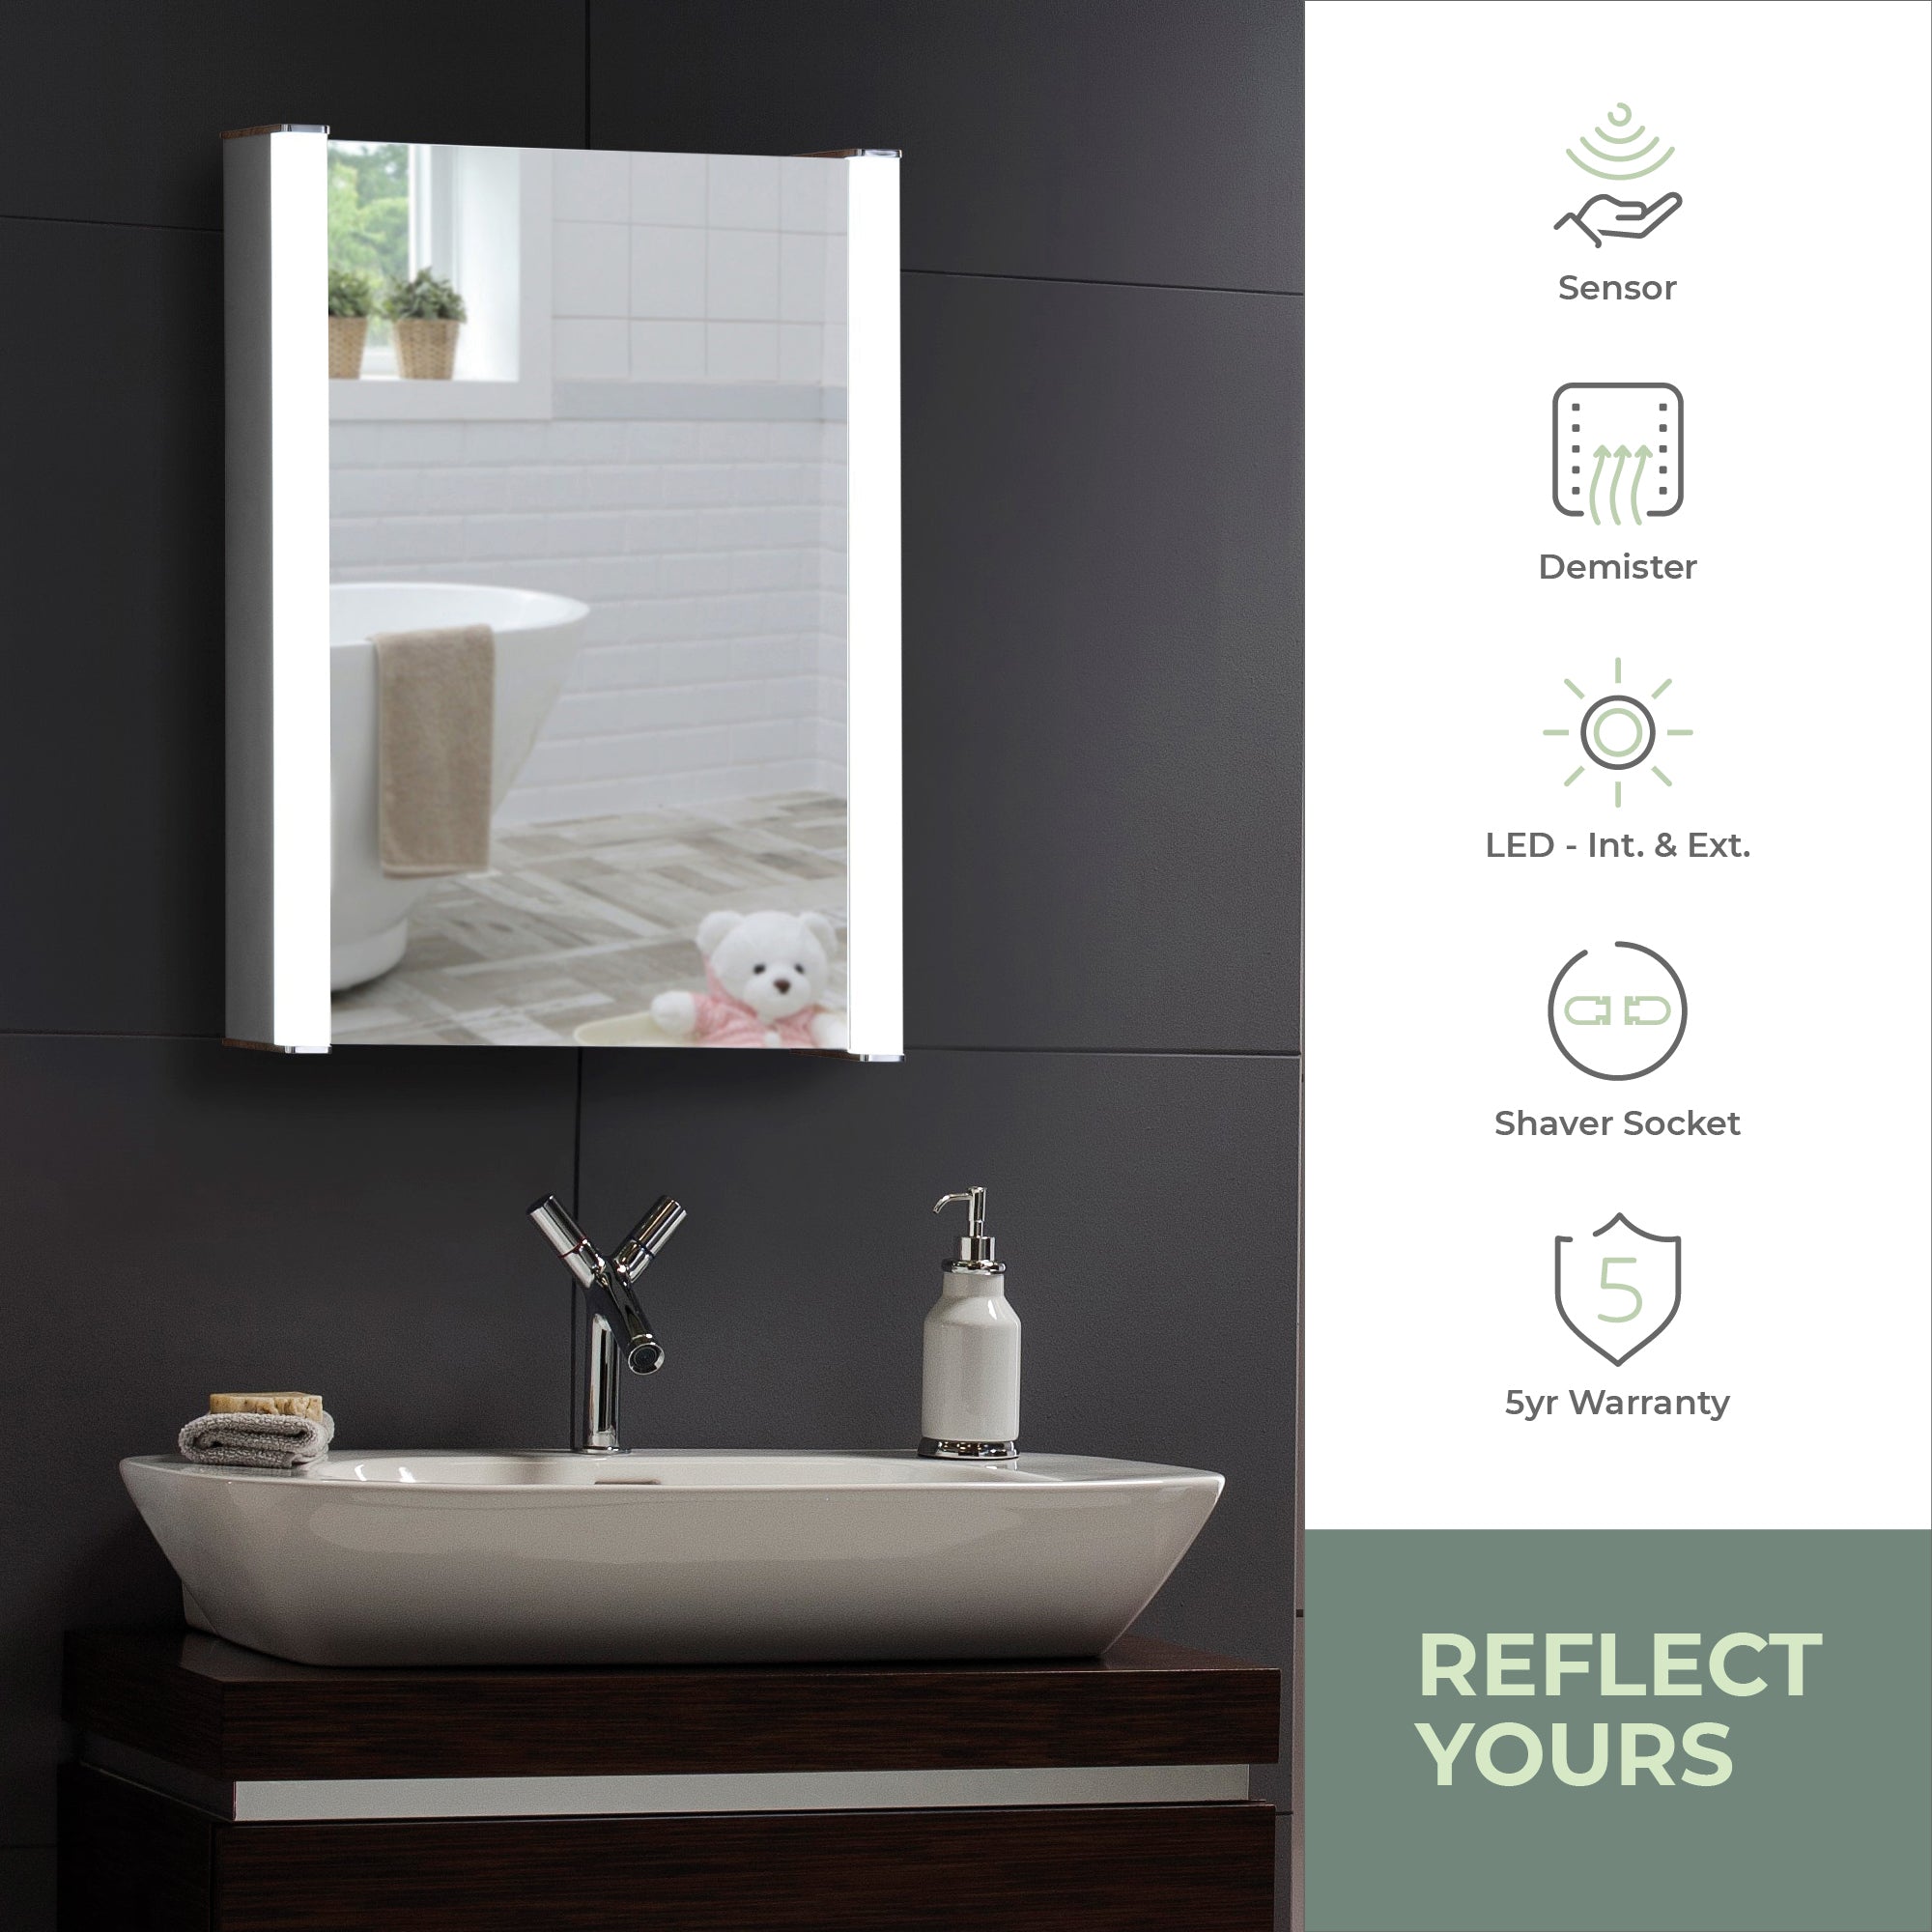 QuasarLED Illuminated Bathroom Mirror Cabinet CABM11: Size-70Hx50Wx16Dcm